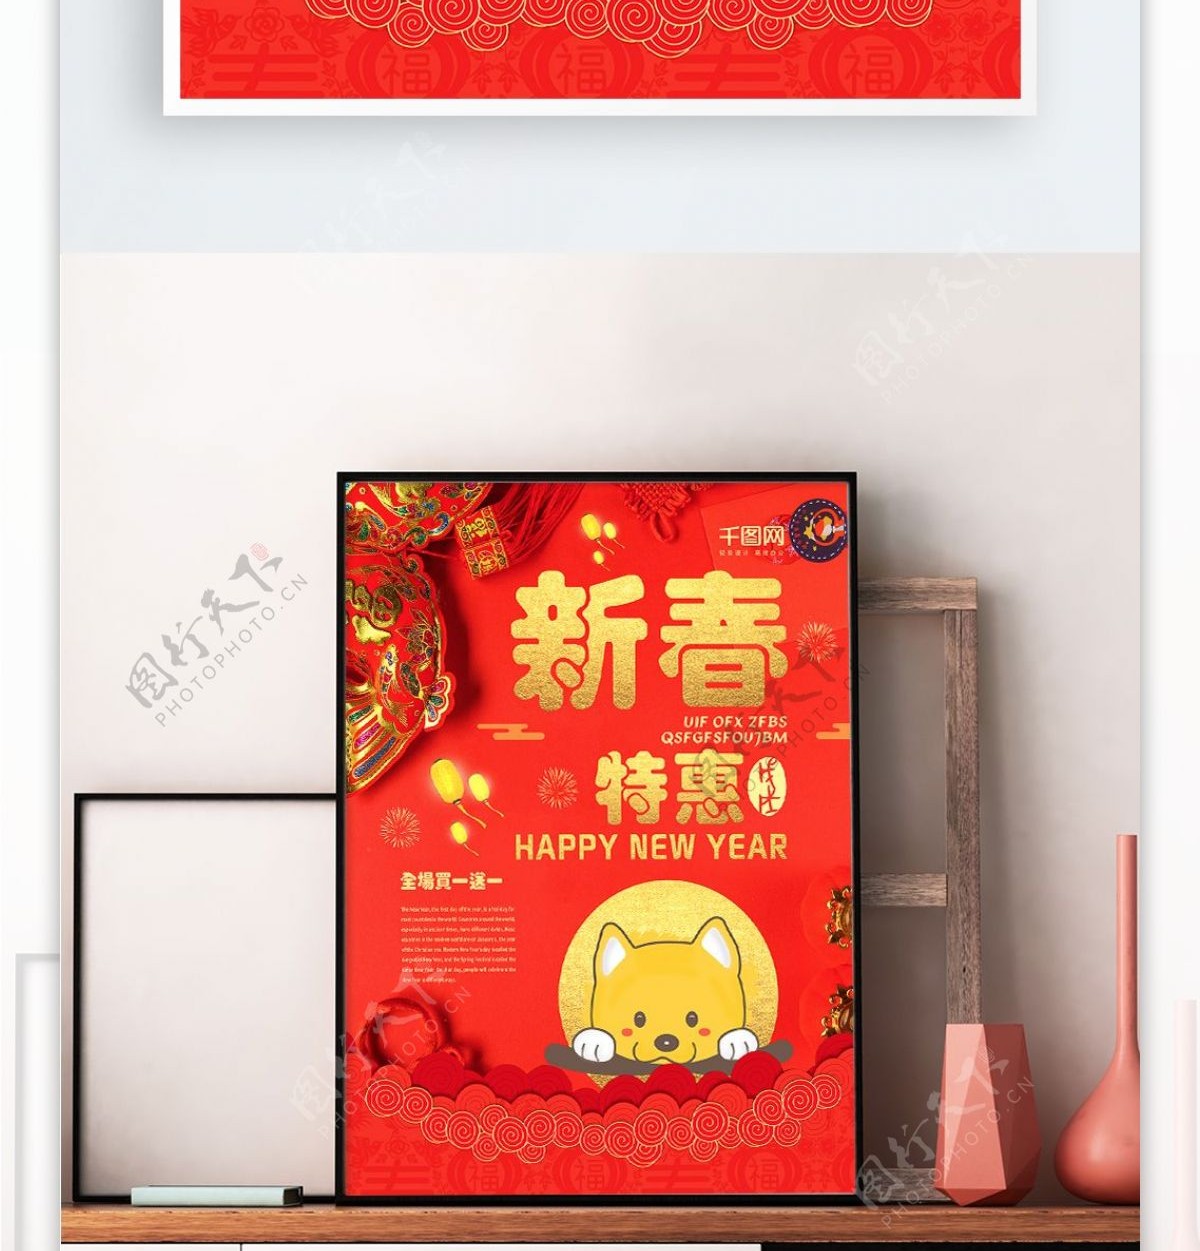 原创插画红色新春特惠狗年商场促销创意海报